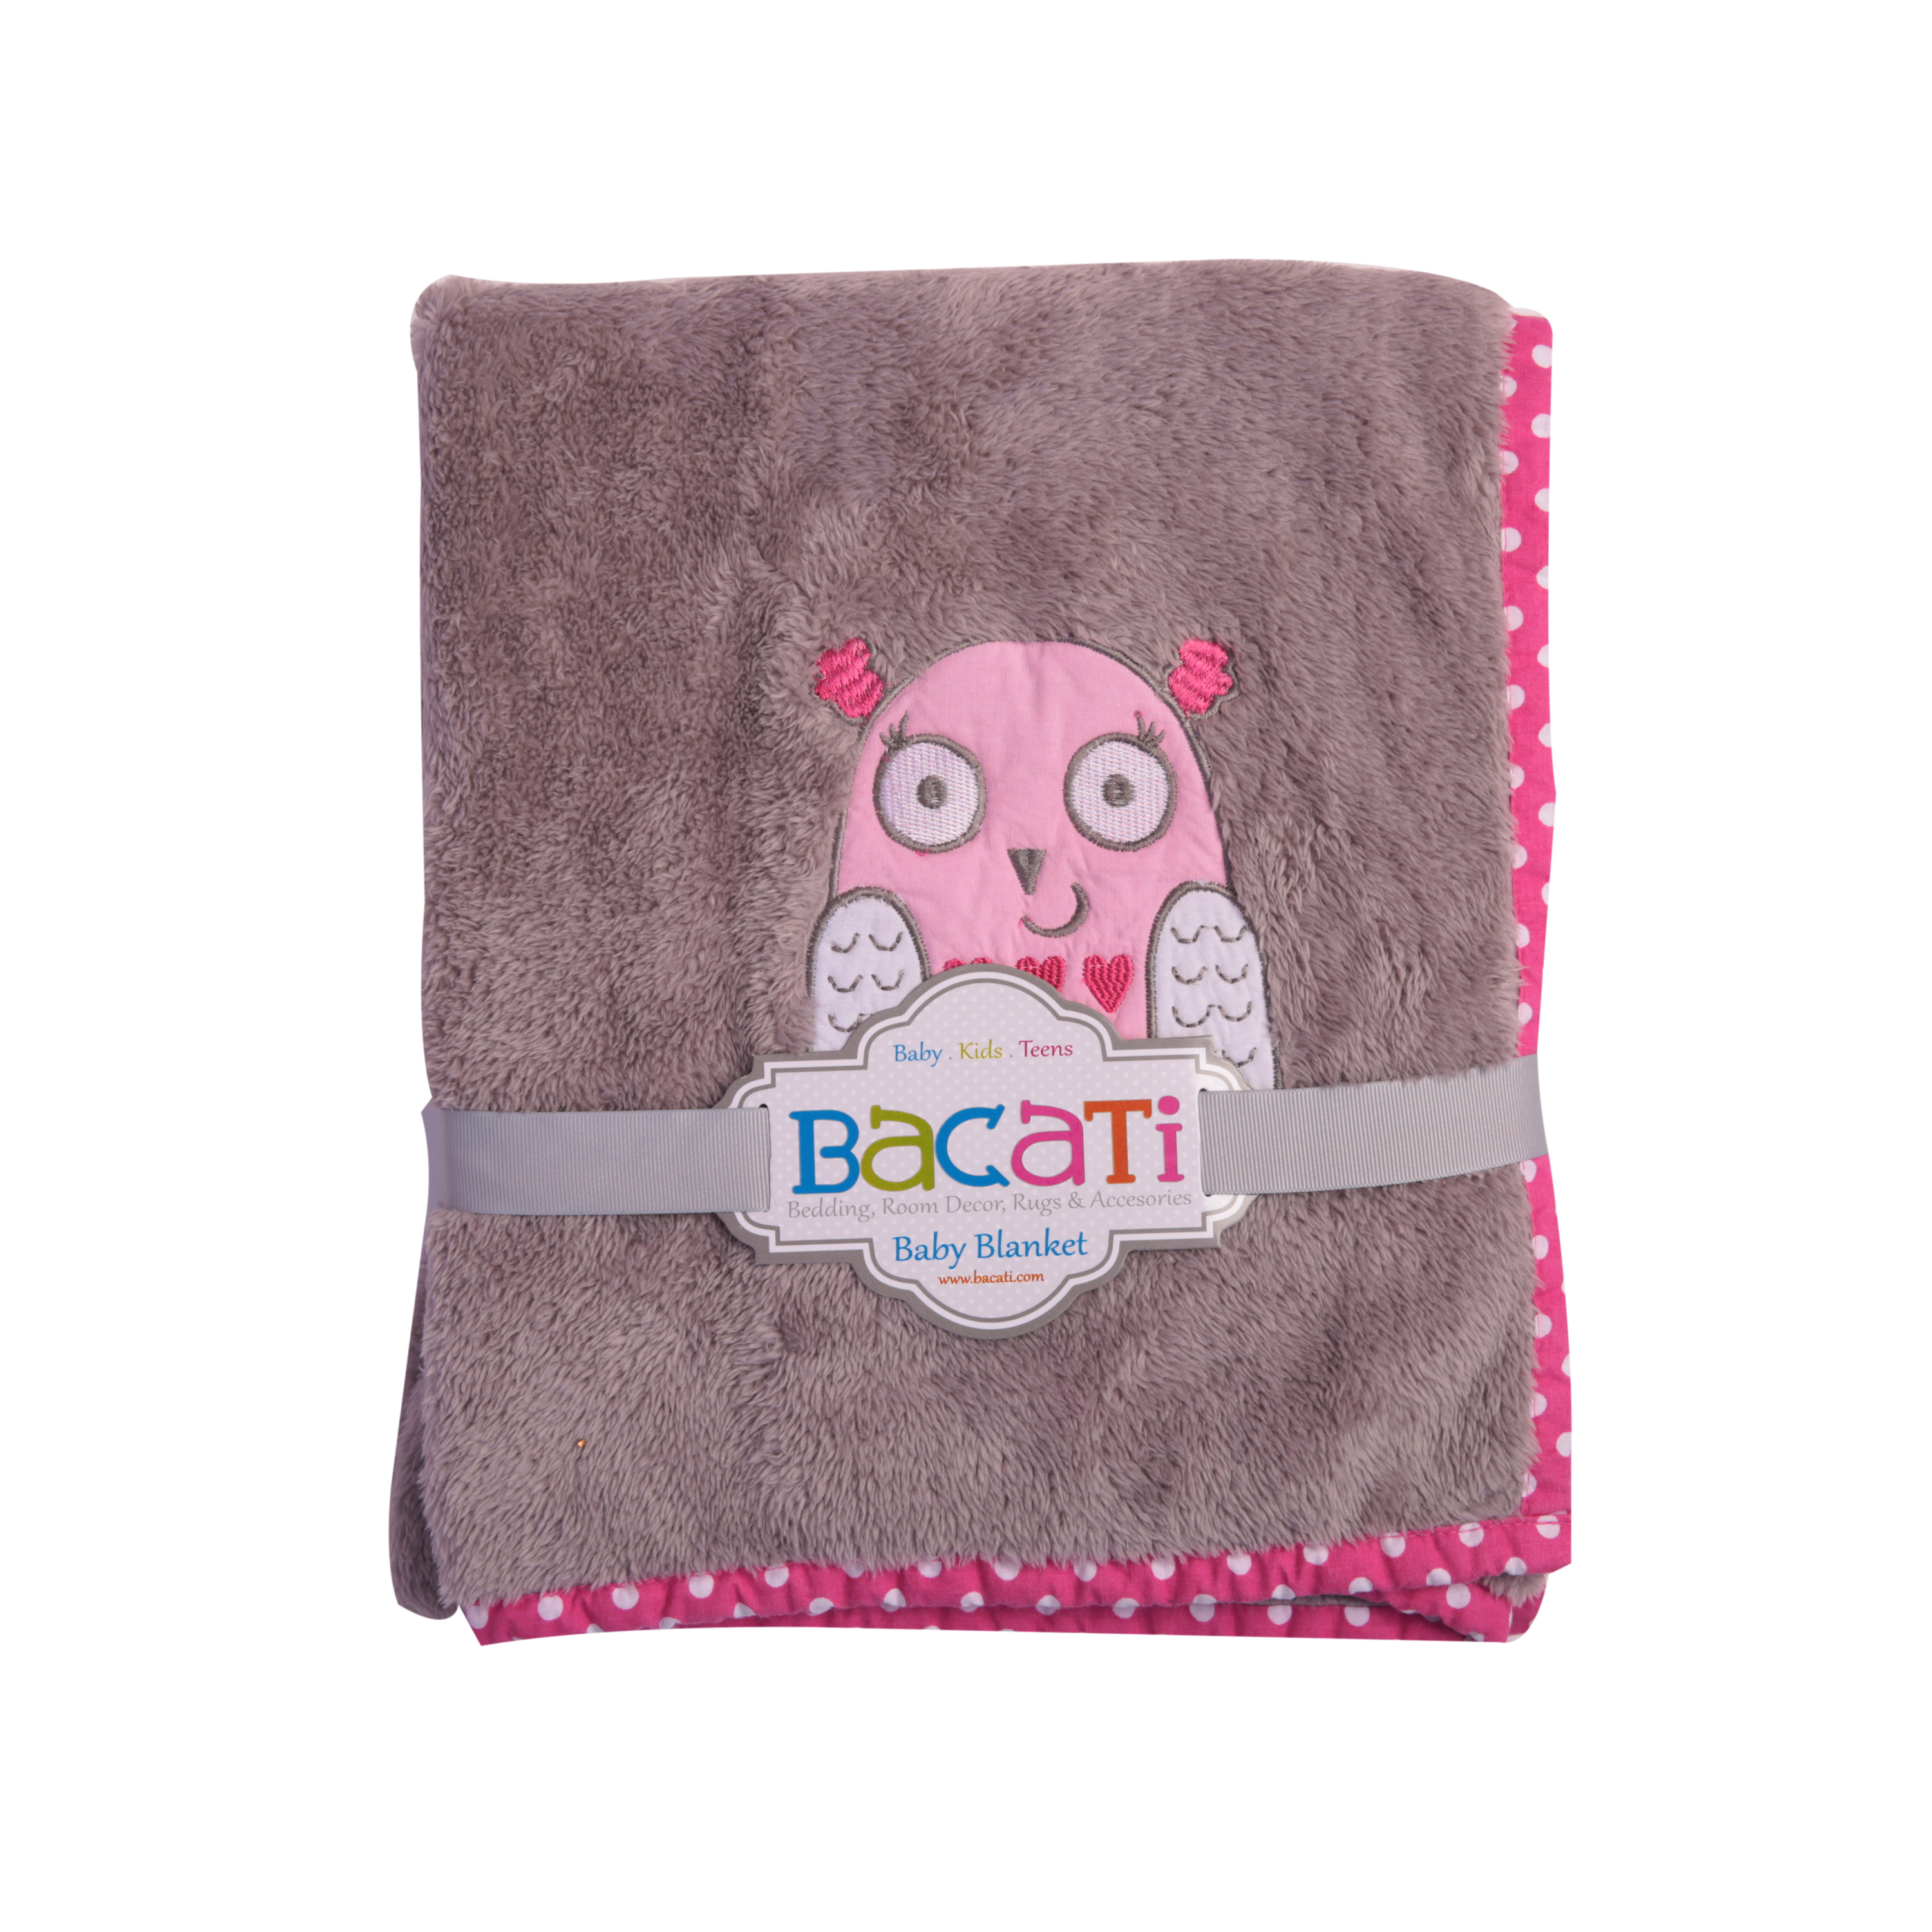 Bacati - Owls Pink/Grey Girls Pink Plush Blanket - image 1 of 8